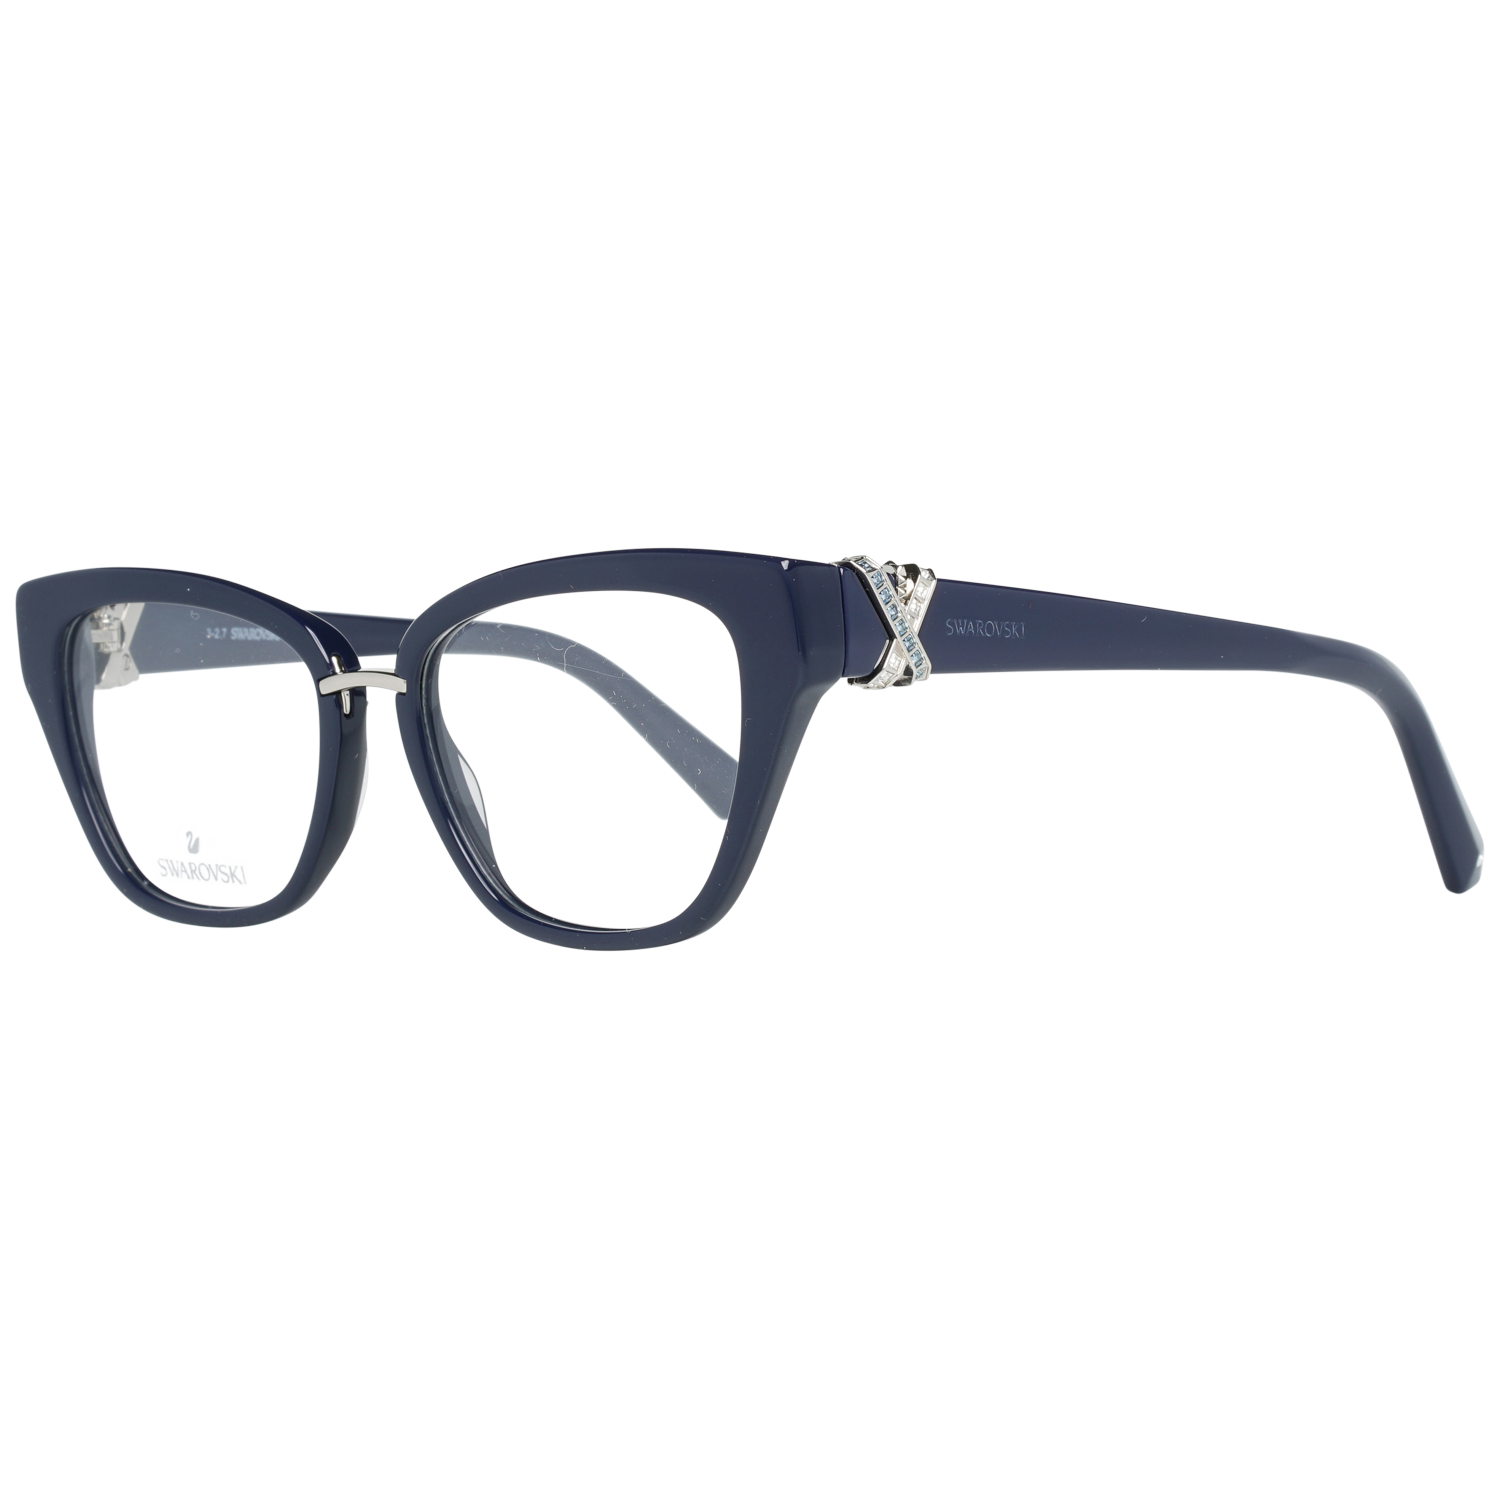 Swarovski Frames Swarovski Women Glasses Optical Frame SK5251 090 50 Eyeglasses Eyewear UK USA Australia 